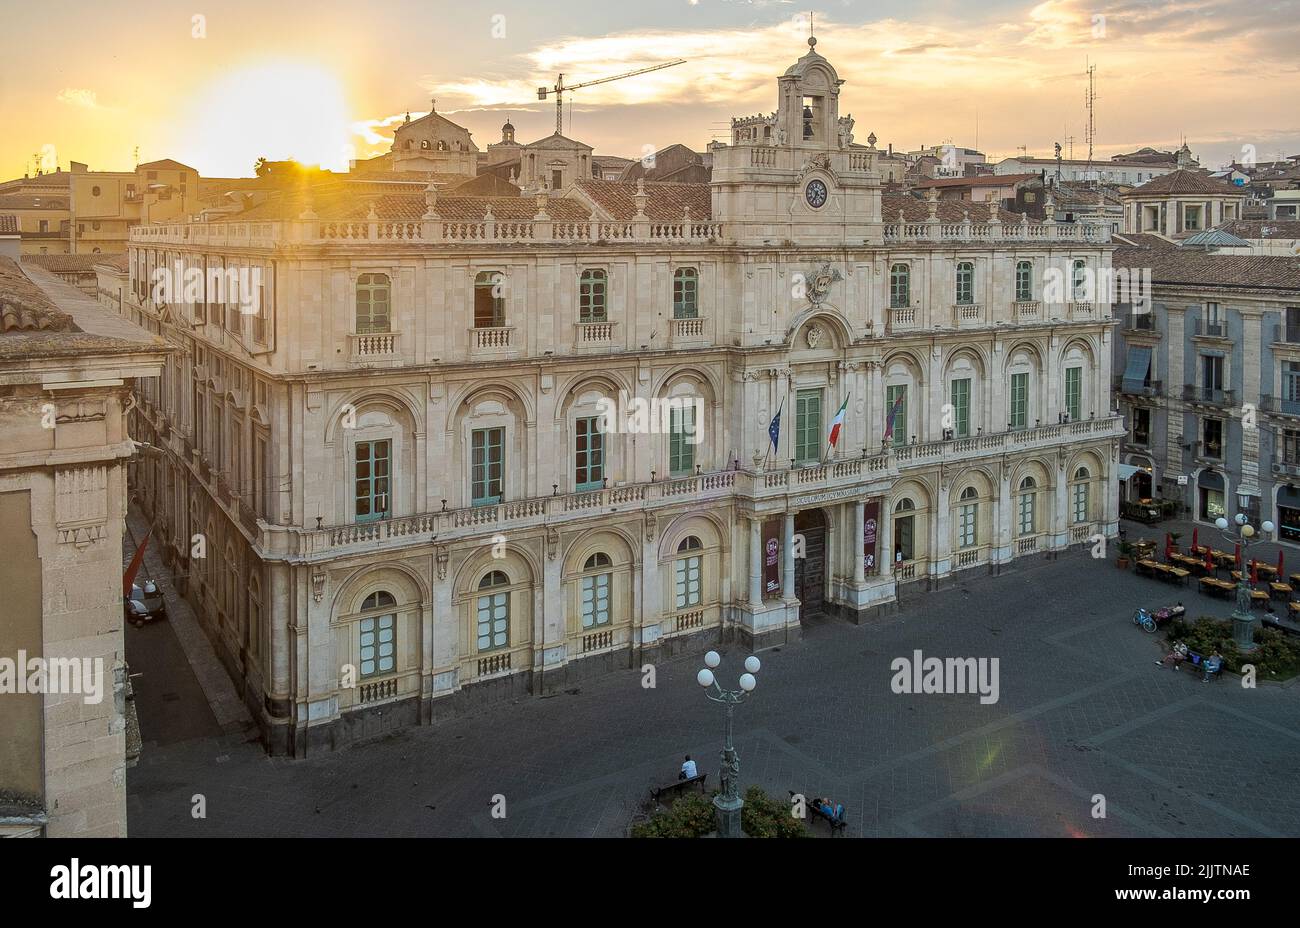 The university palace along via Etnea in Catania, Sicily, Italy Stock Photo